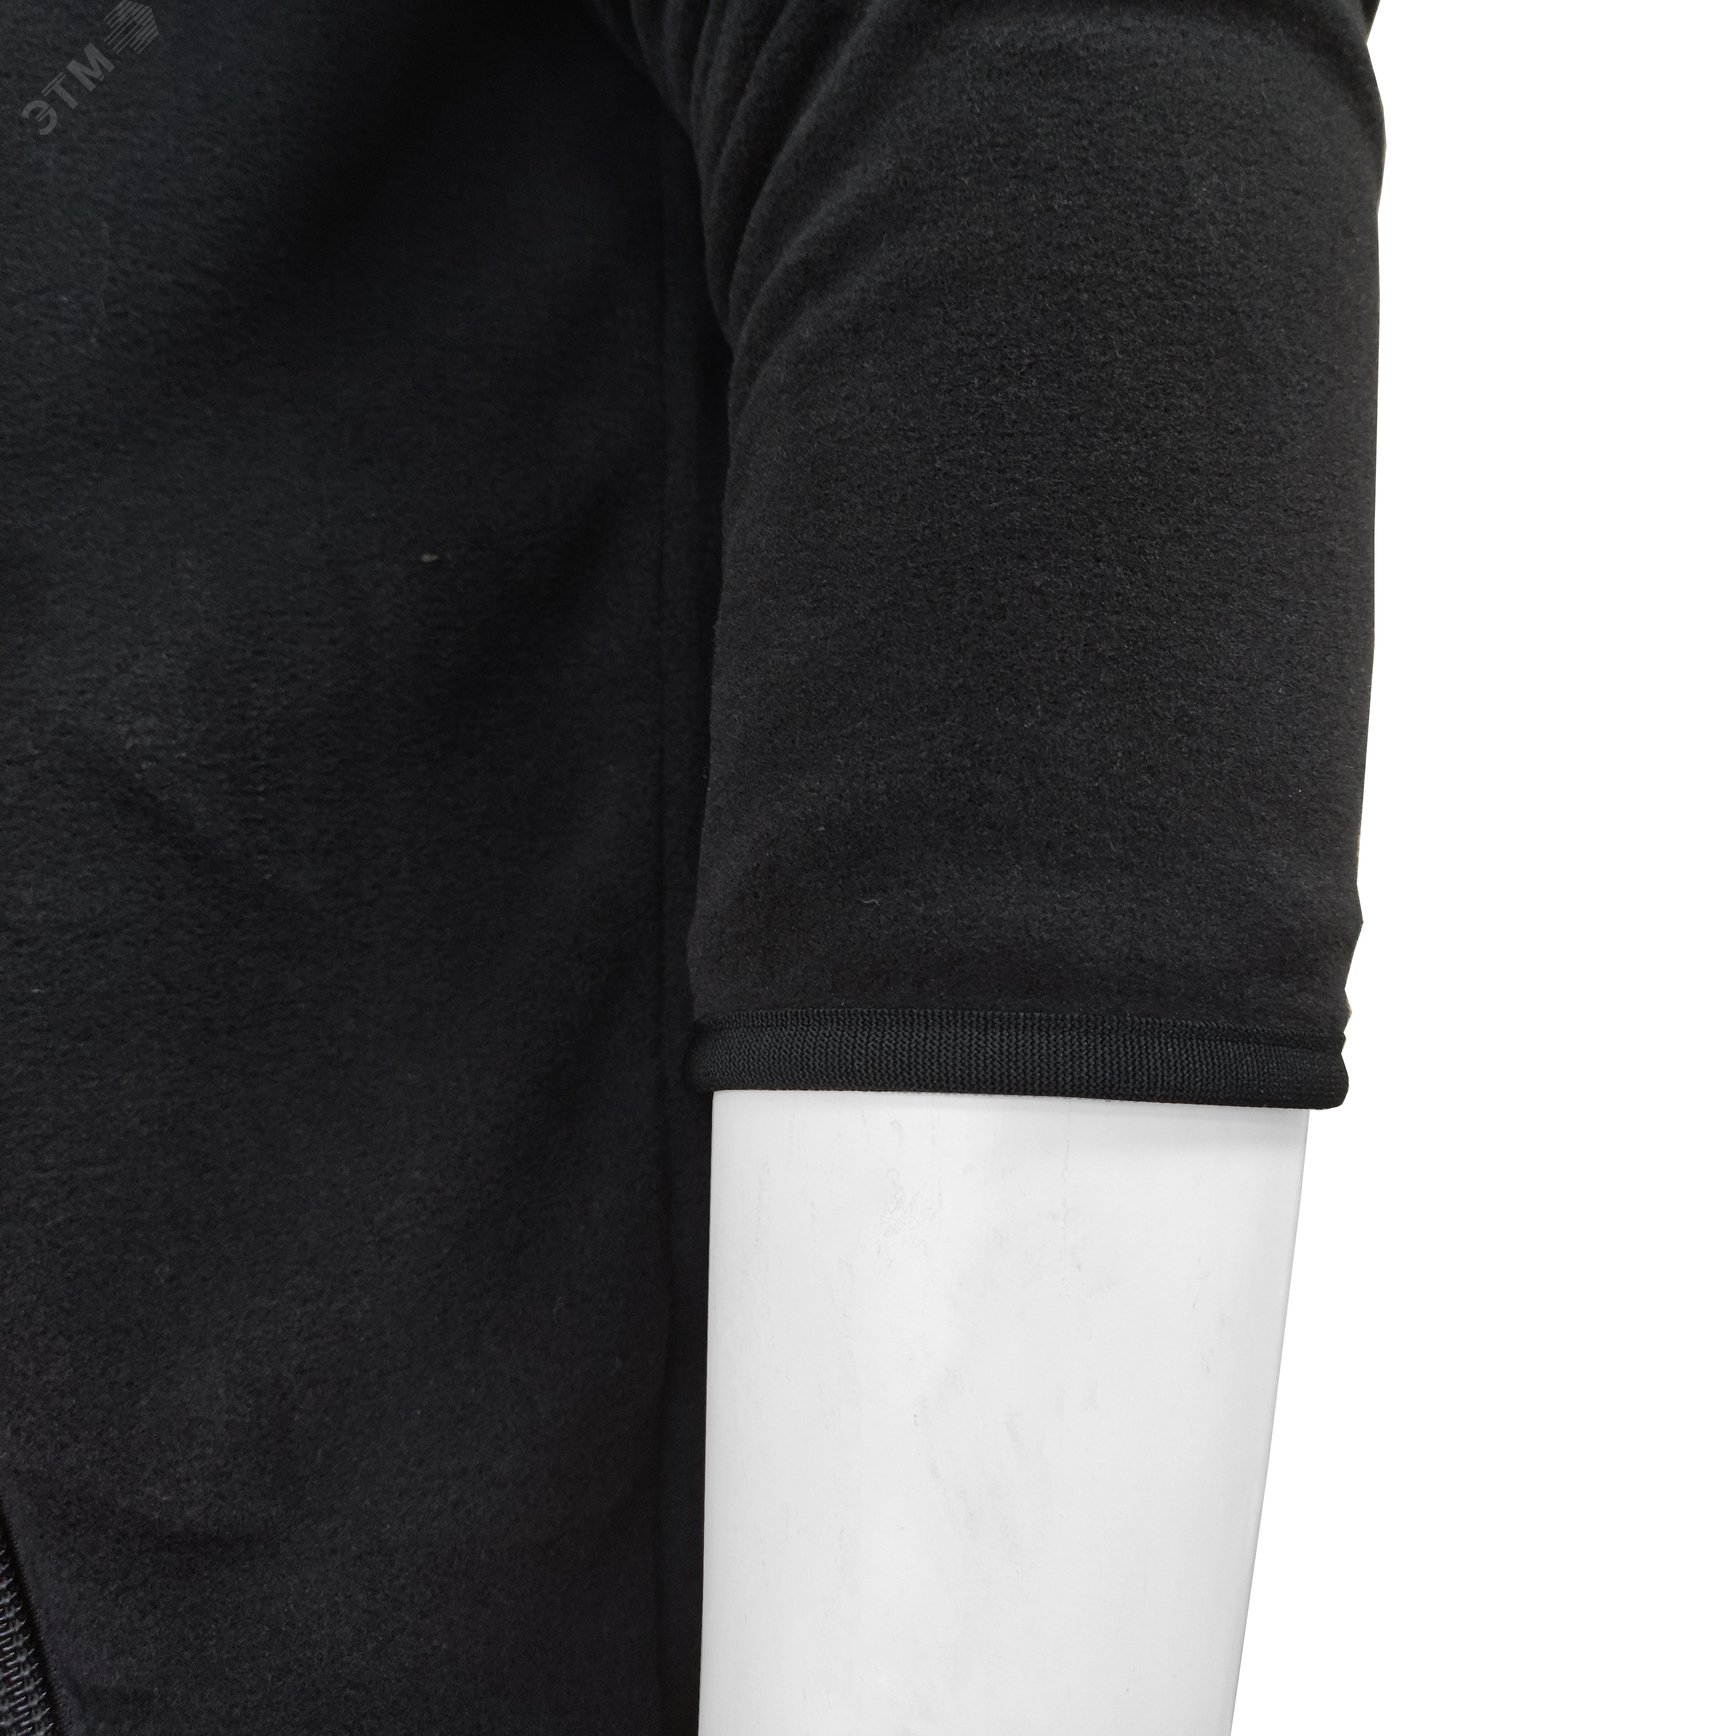 Куртка флисовая арт. JF-01 на молнии цв. чёрный 52-54 р. L 142300 Эталон-Спецодежда - превью 10